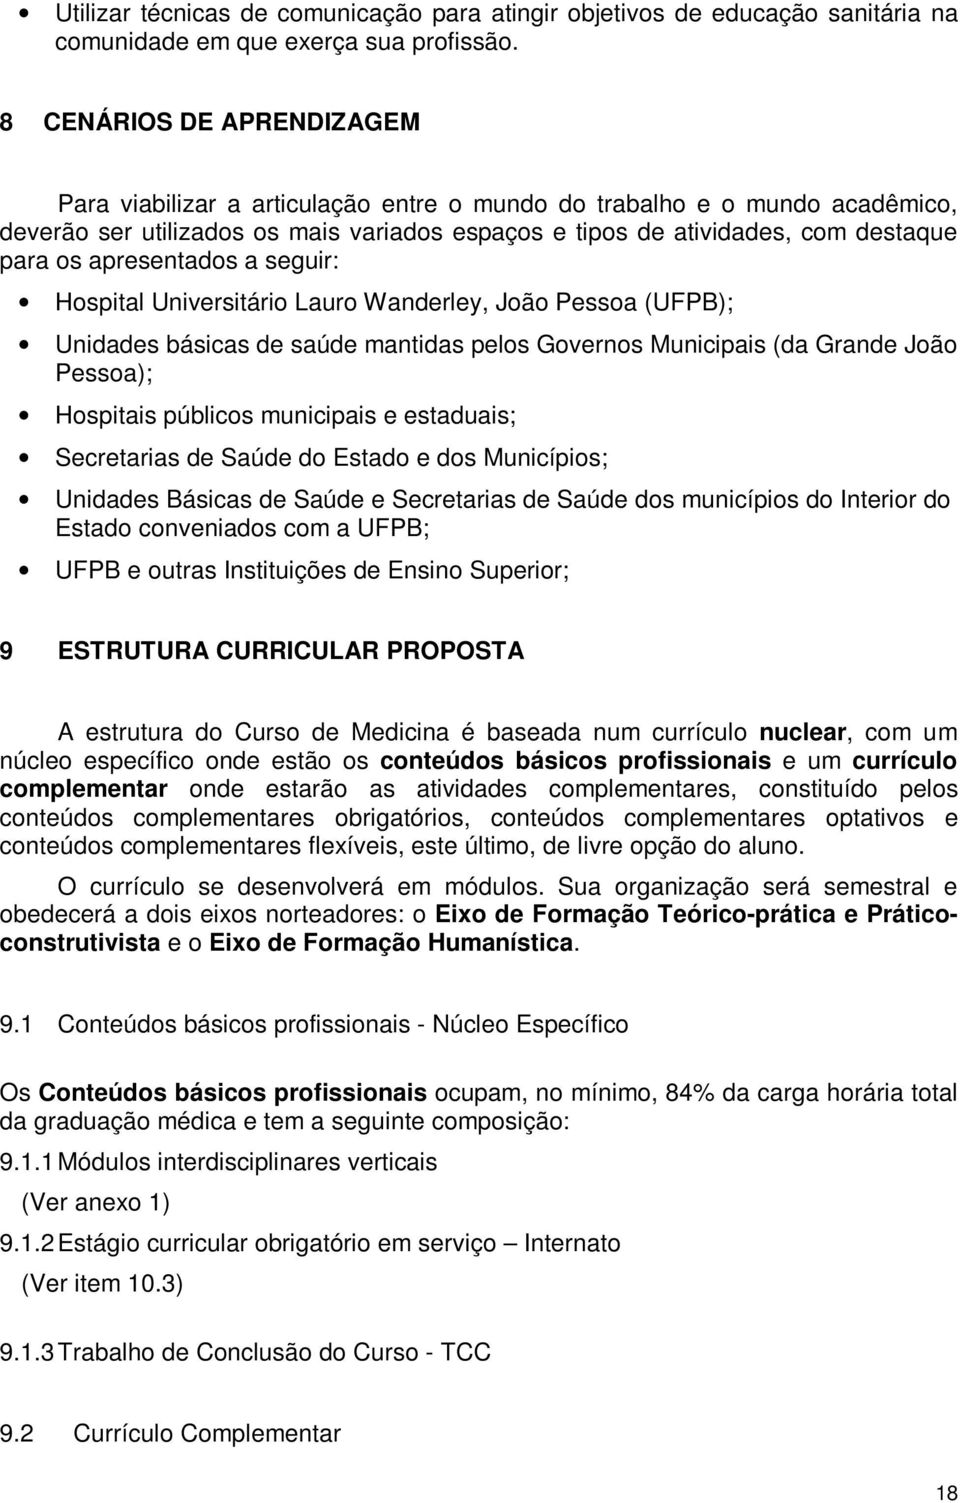 apresentados a seguir: Hospital Universitário Lauro Wanderley, João Pessoa (UFPB); Unidades básicas de saúde mantidas pelos Governos Municipais (da Grande João Pessoa); Hospitais públicos municipais